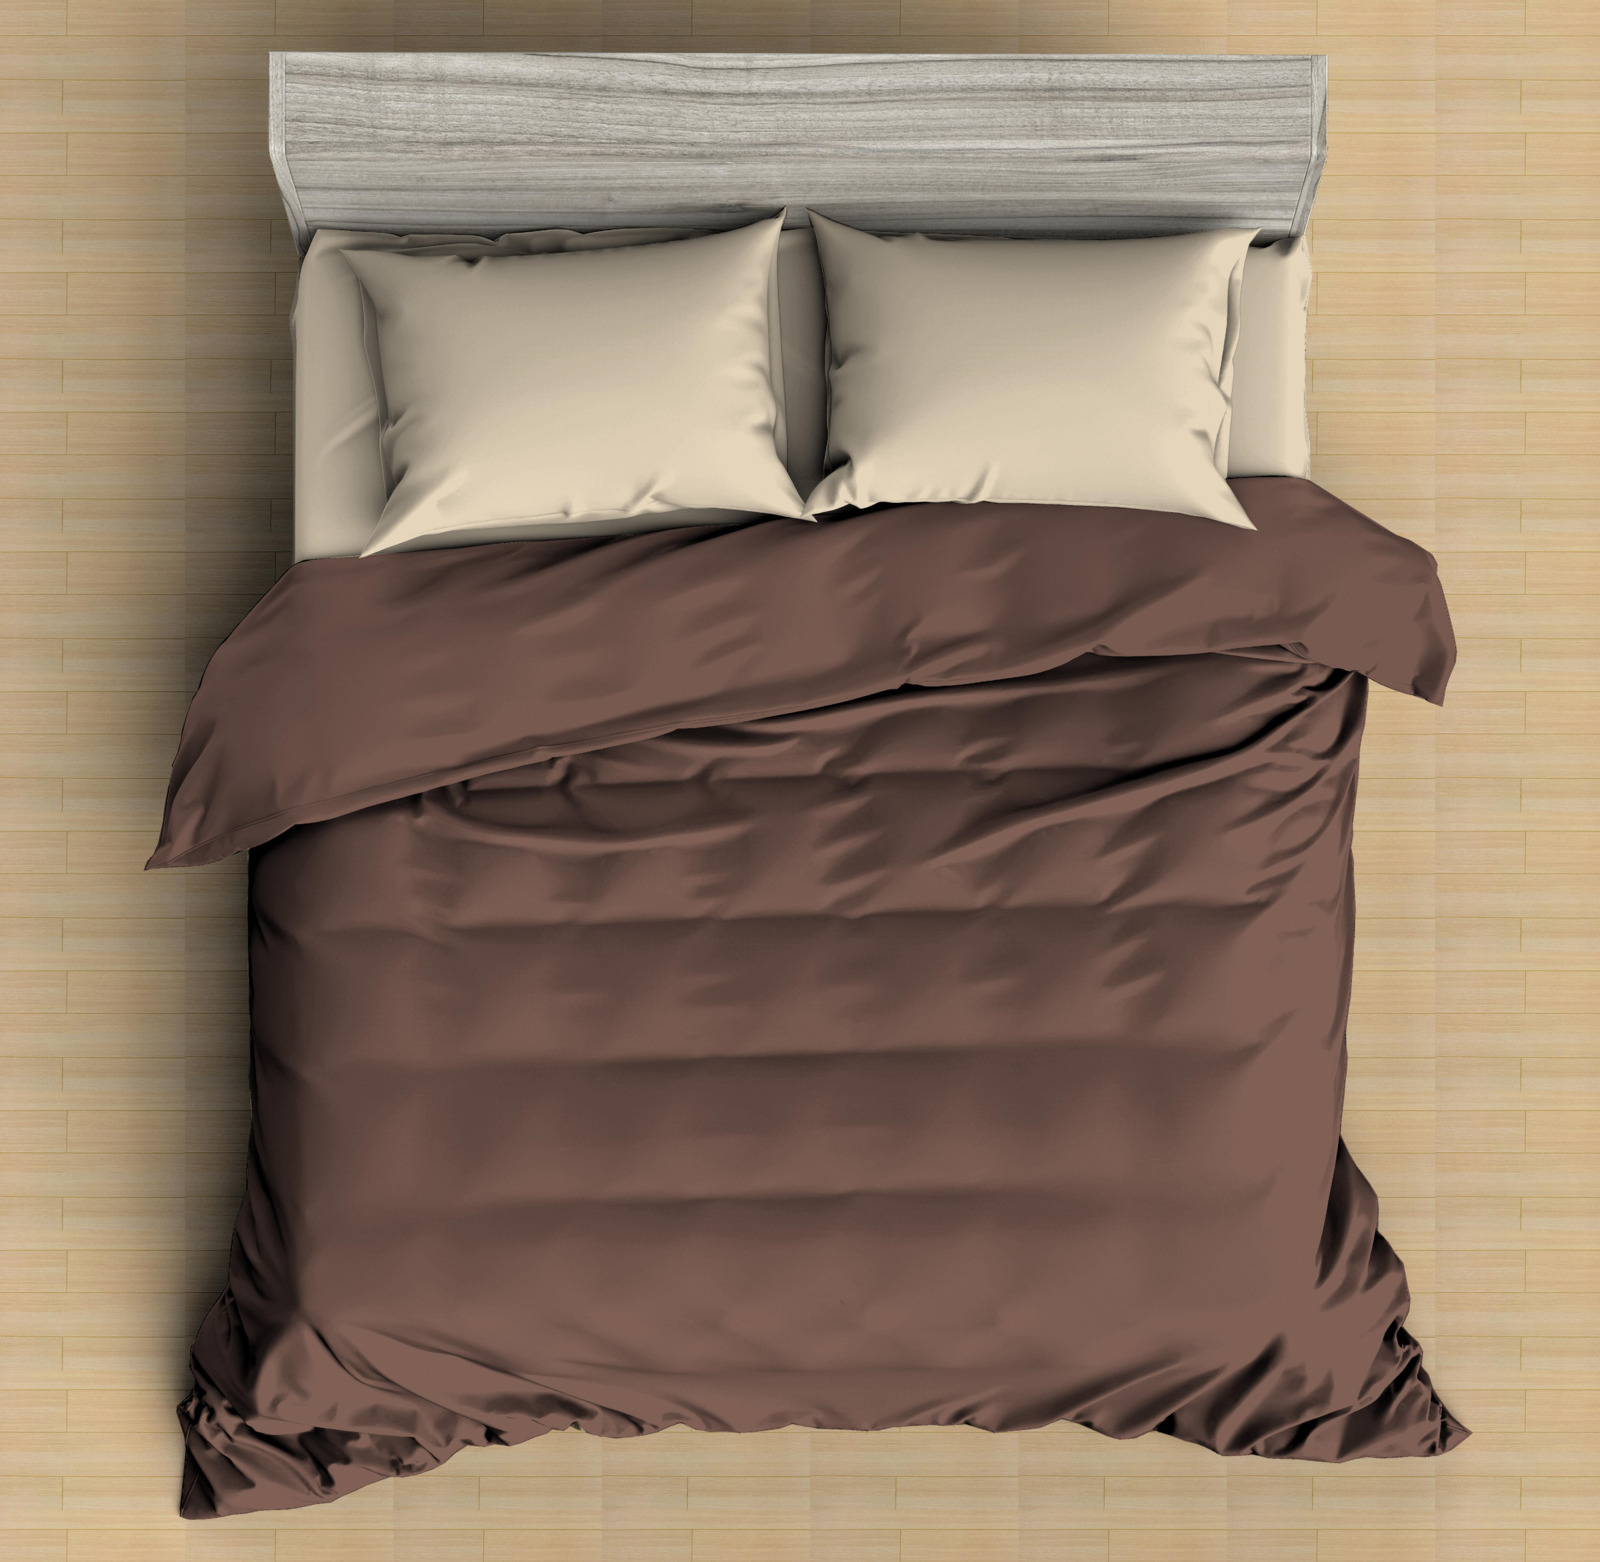 фото Комплект постельного белья Amore Mio Макосатин Andrew, 9543, коричневый, 1,5-спальный, наволочки 70x70